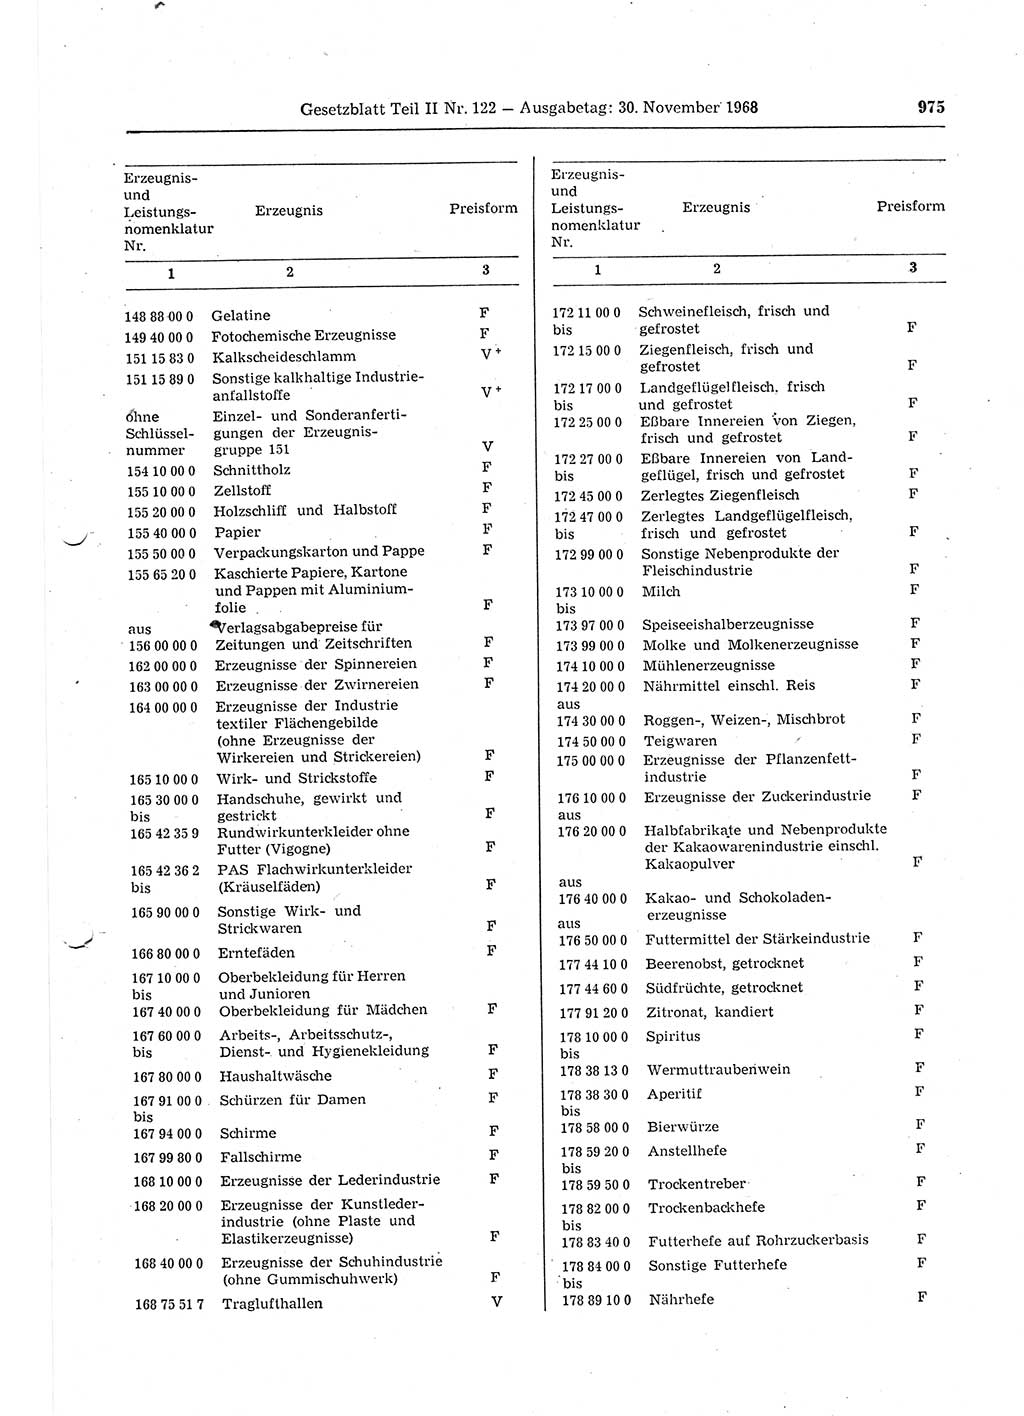 Gesetzblatt (GBl.) der Deutschen Demokratischen Republik (DDR) Teil ⅠⅠ 1968, Seite 975 (GBl. DDR ⅠⅠ 1968, S. 975)